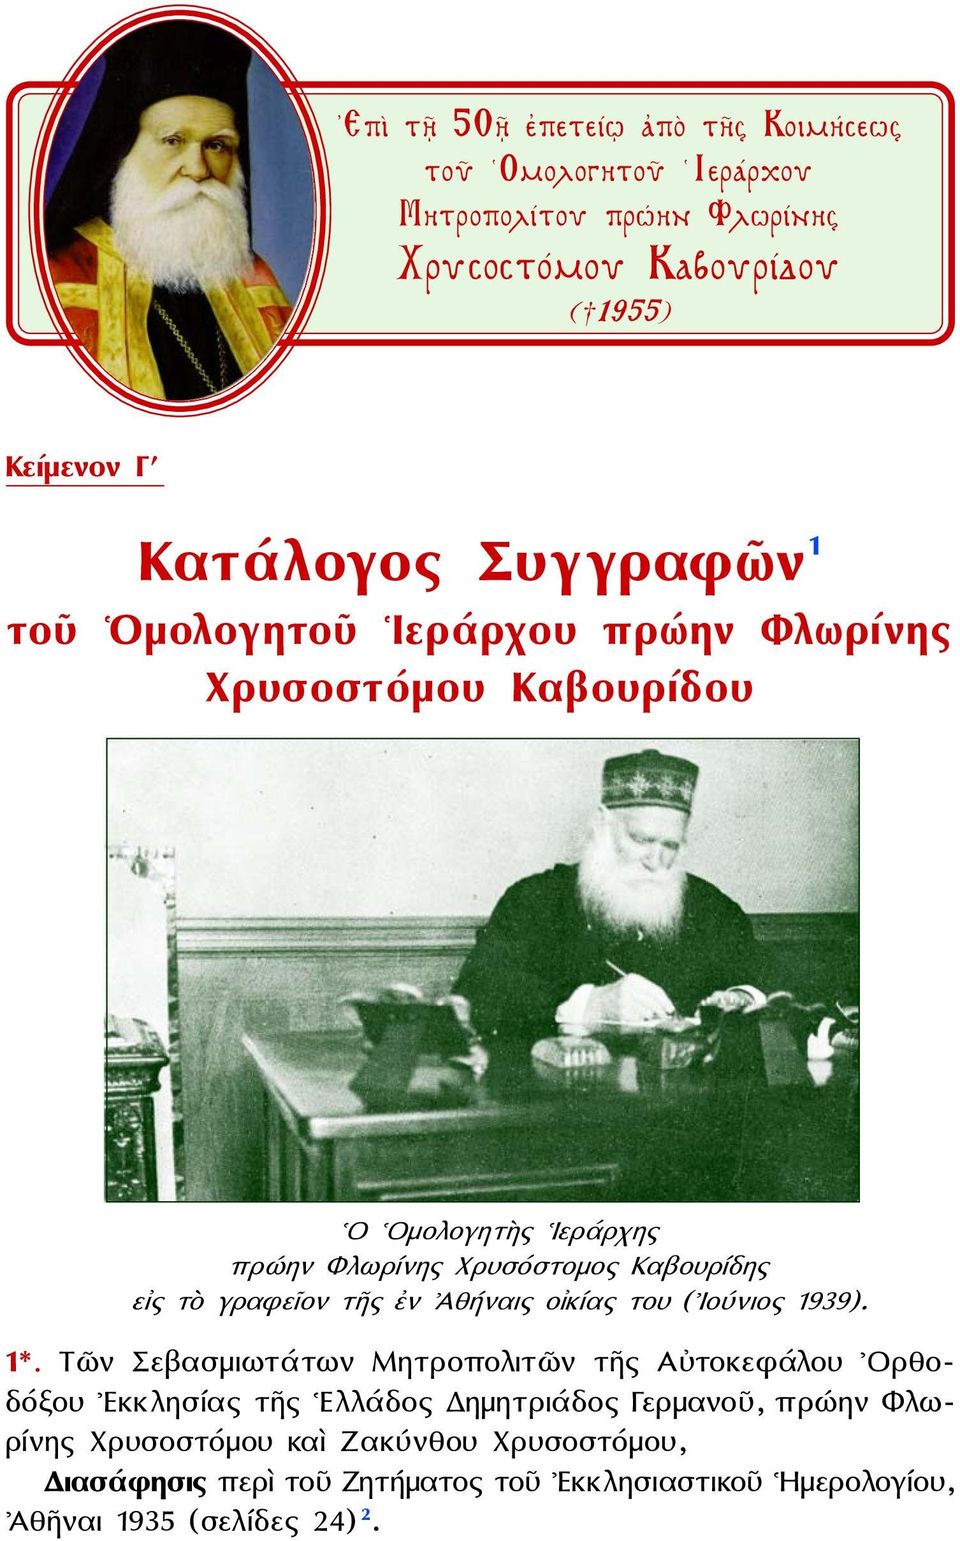 γραφεῖον τῆς ἐν Ἀθήναις οἰκίας του ( Ιούνιος 1939). 1*.